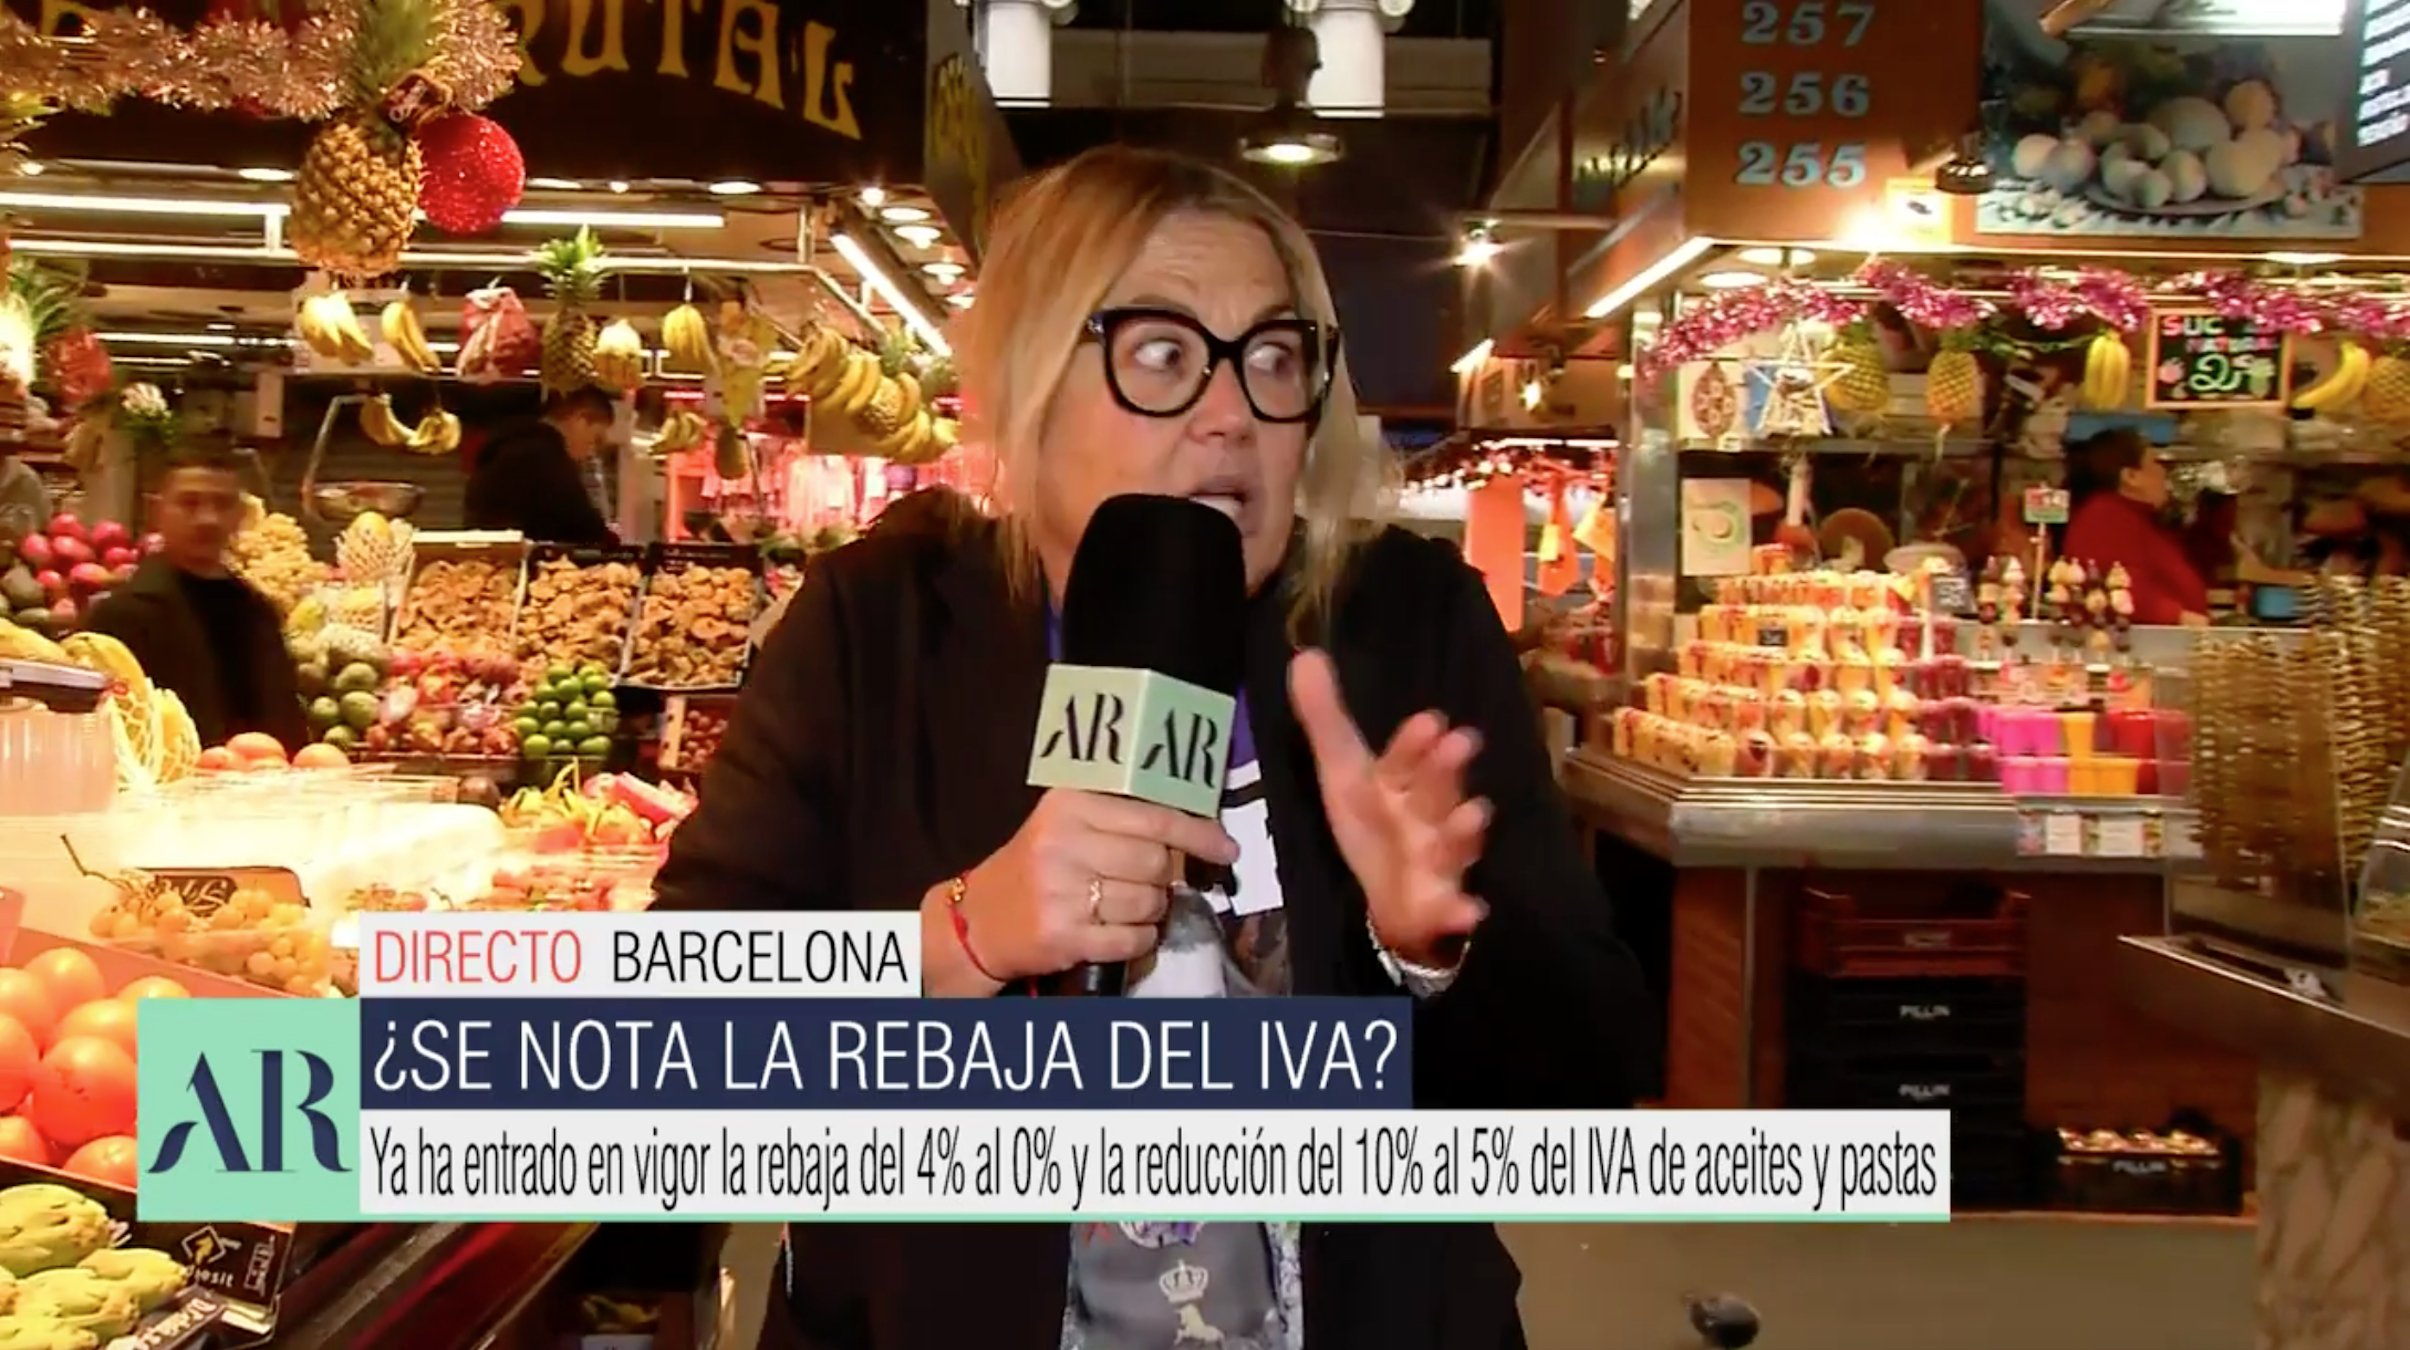 El zasca de un frutero de la Boqueria a Mayka Navarro y Telecinco: "No puede ser"